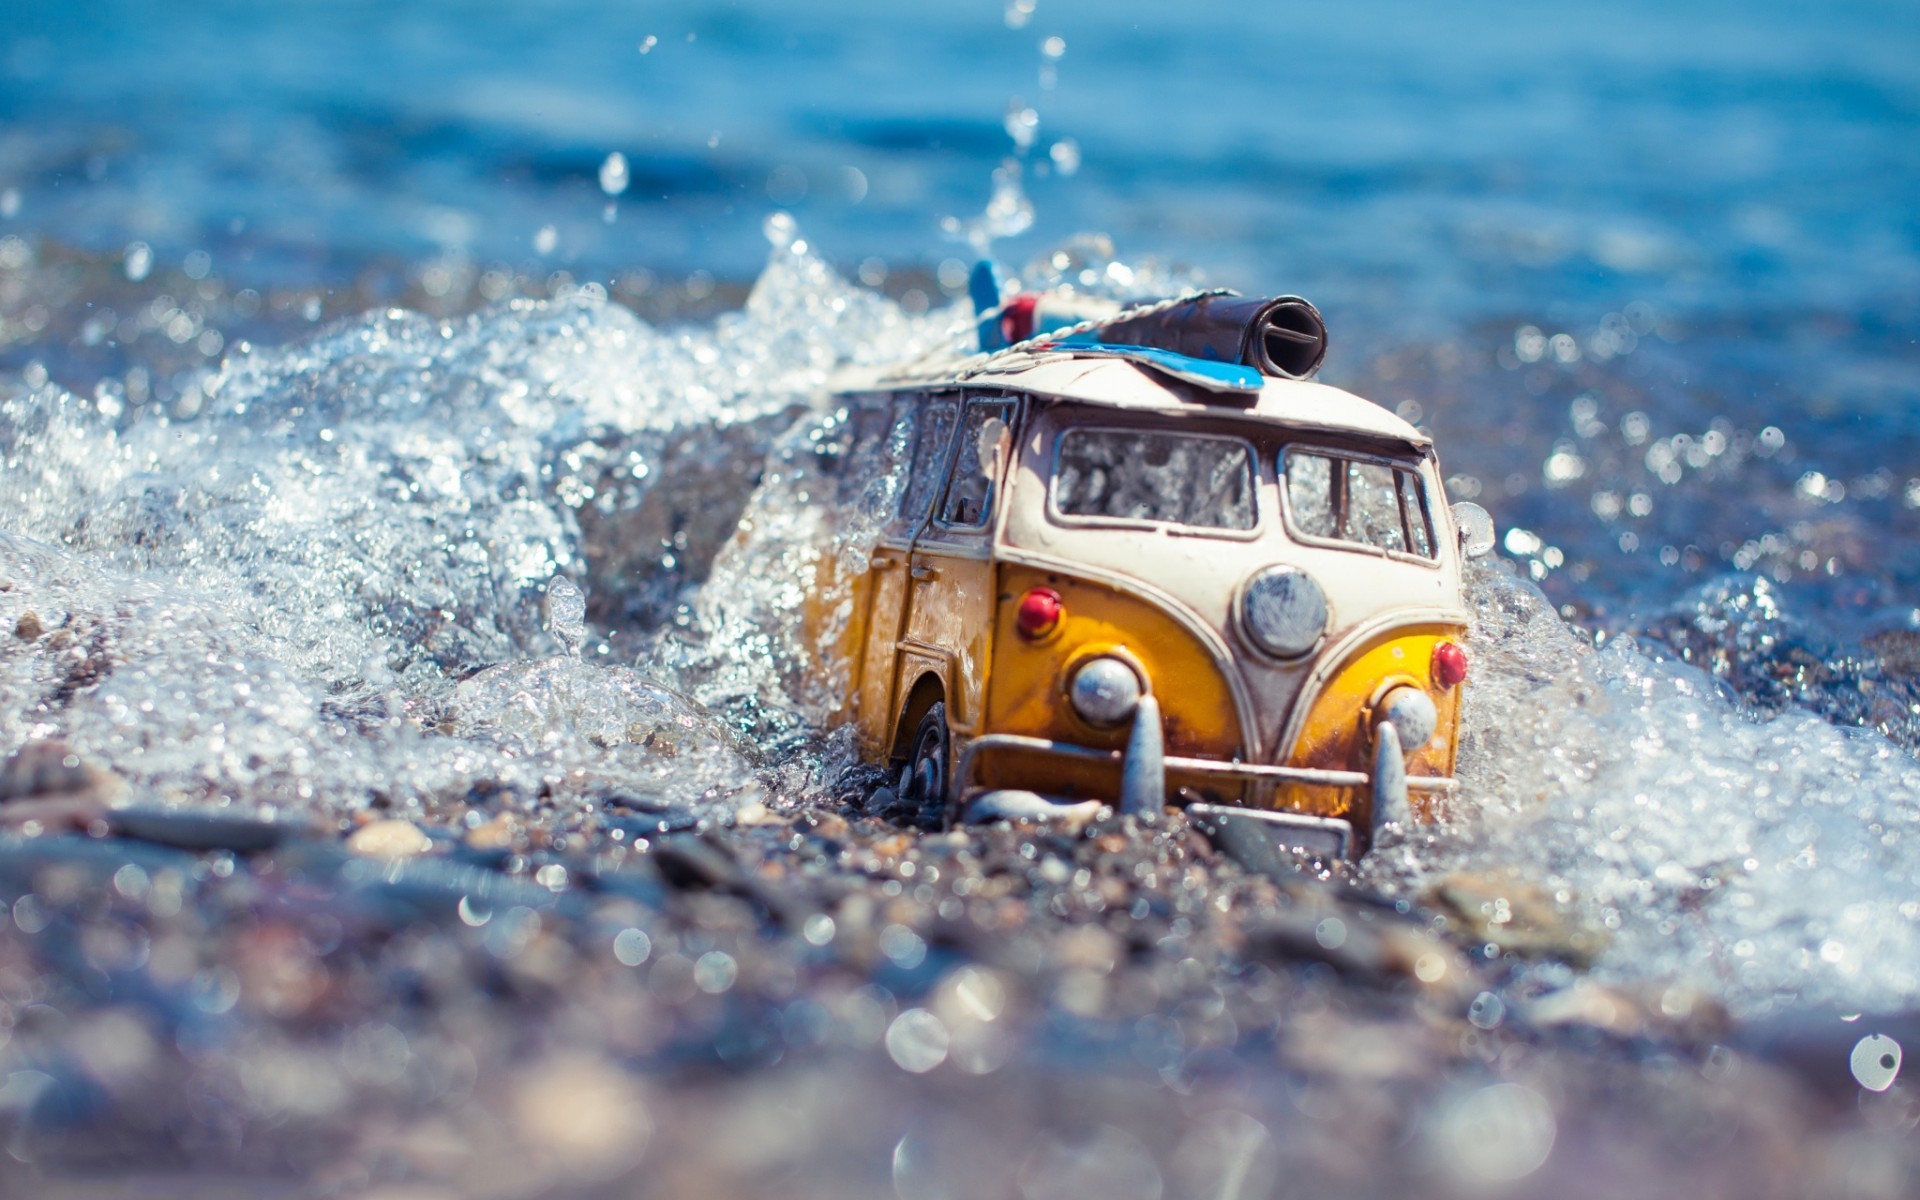 General 1920x1200 van macro water water drops Volkswagen Volkswagen Bus toys miniatures car water splash splashes vehicle